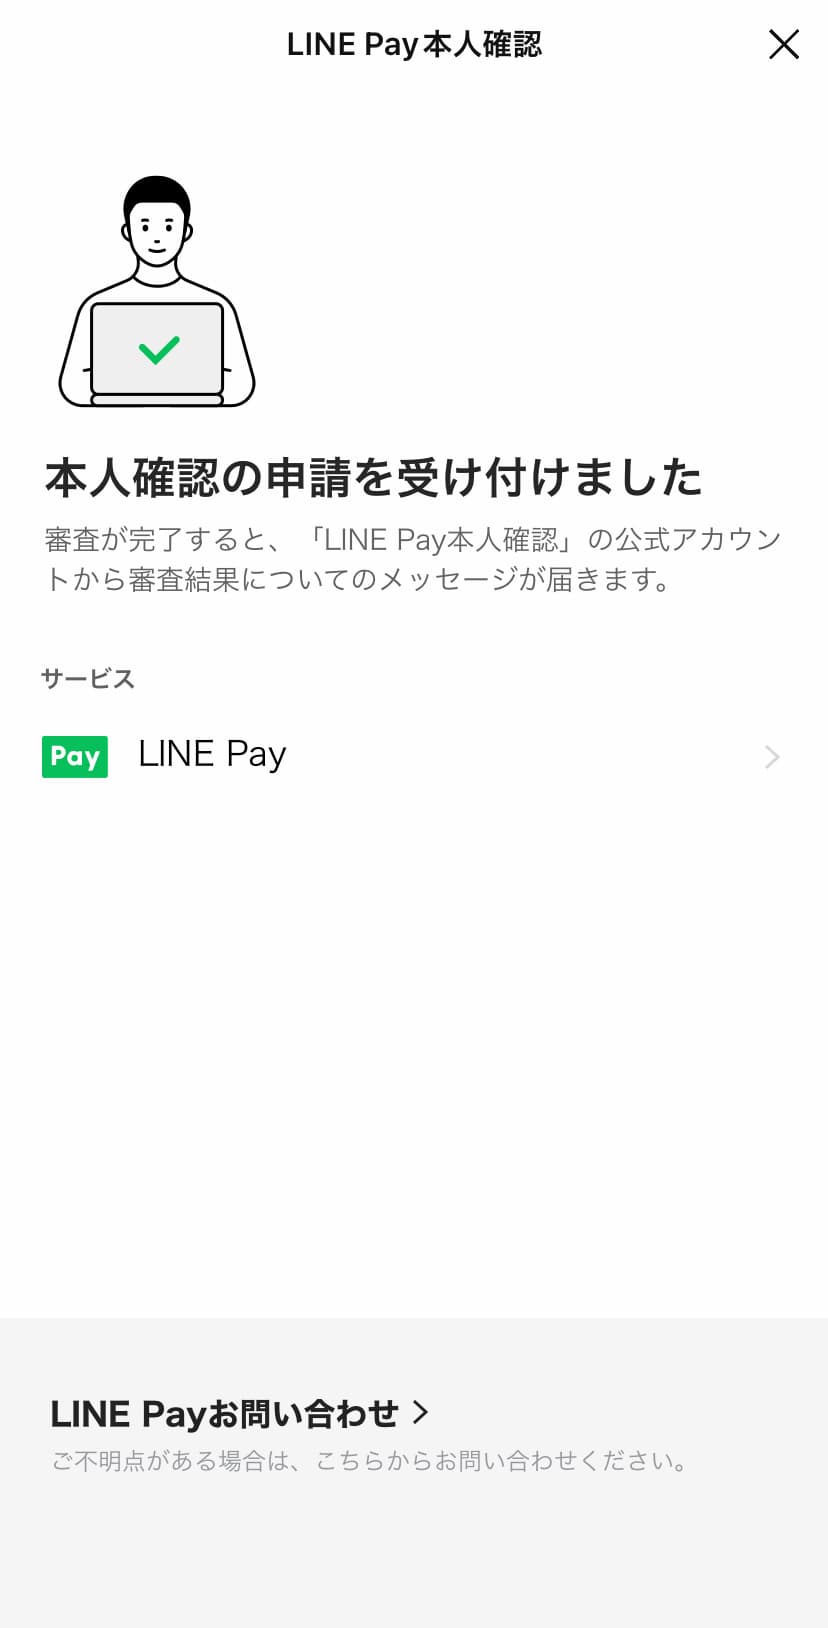 ステップ②：LINE Payに登録する